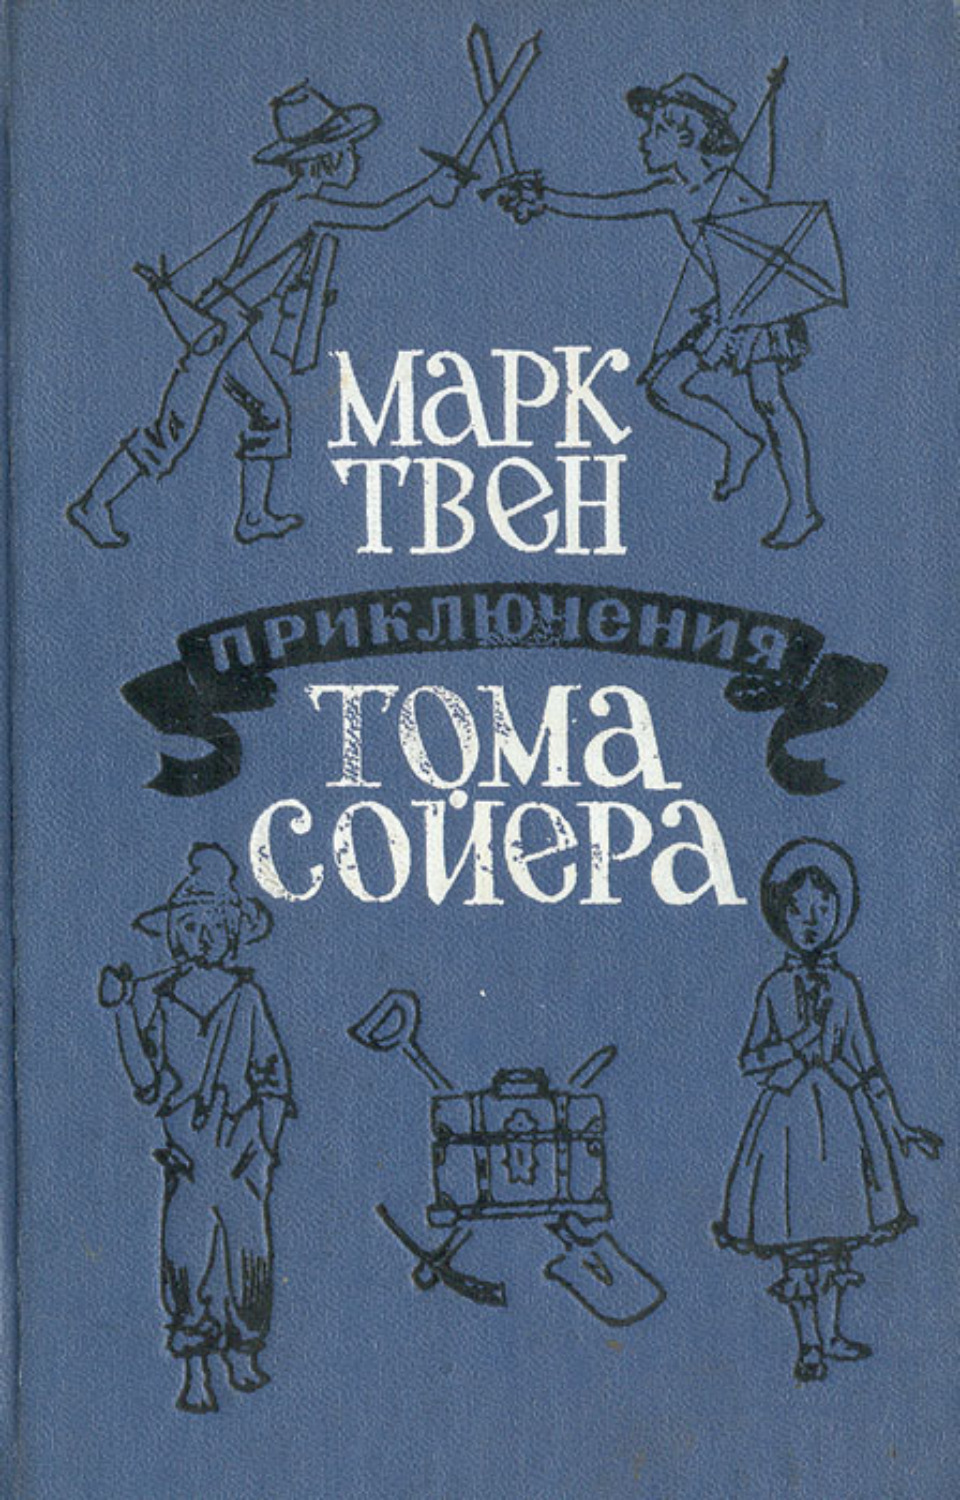 Приключения о томе сойере. Обложка книги приключения Тома Сойера.